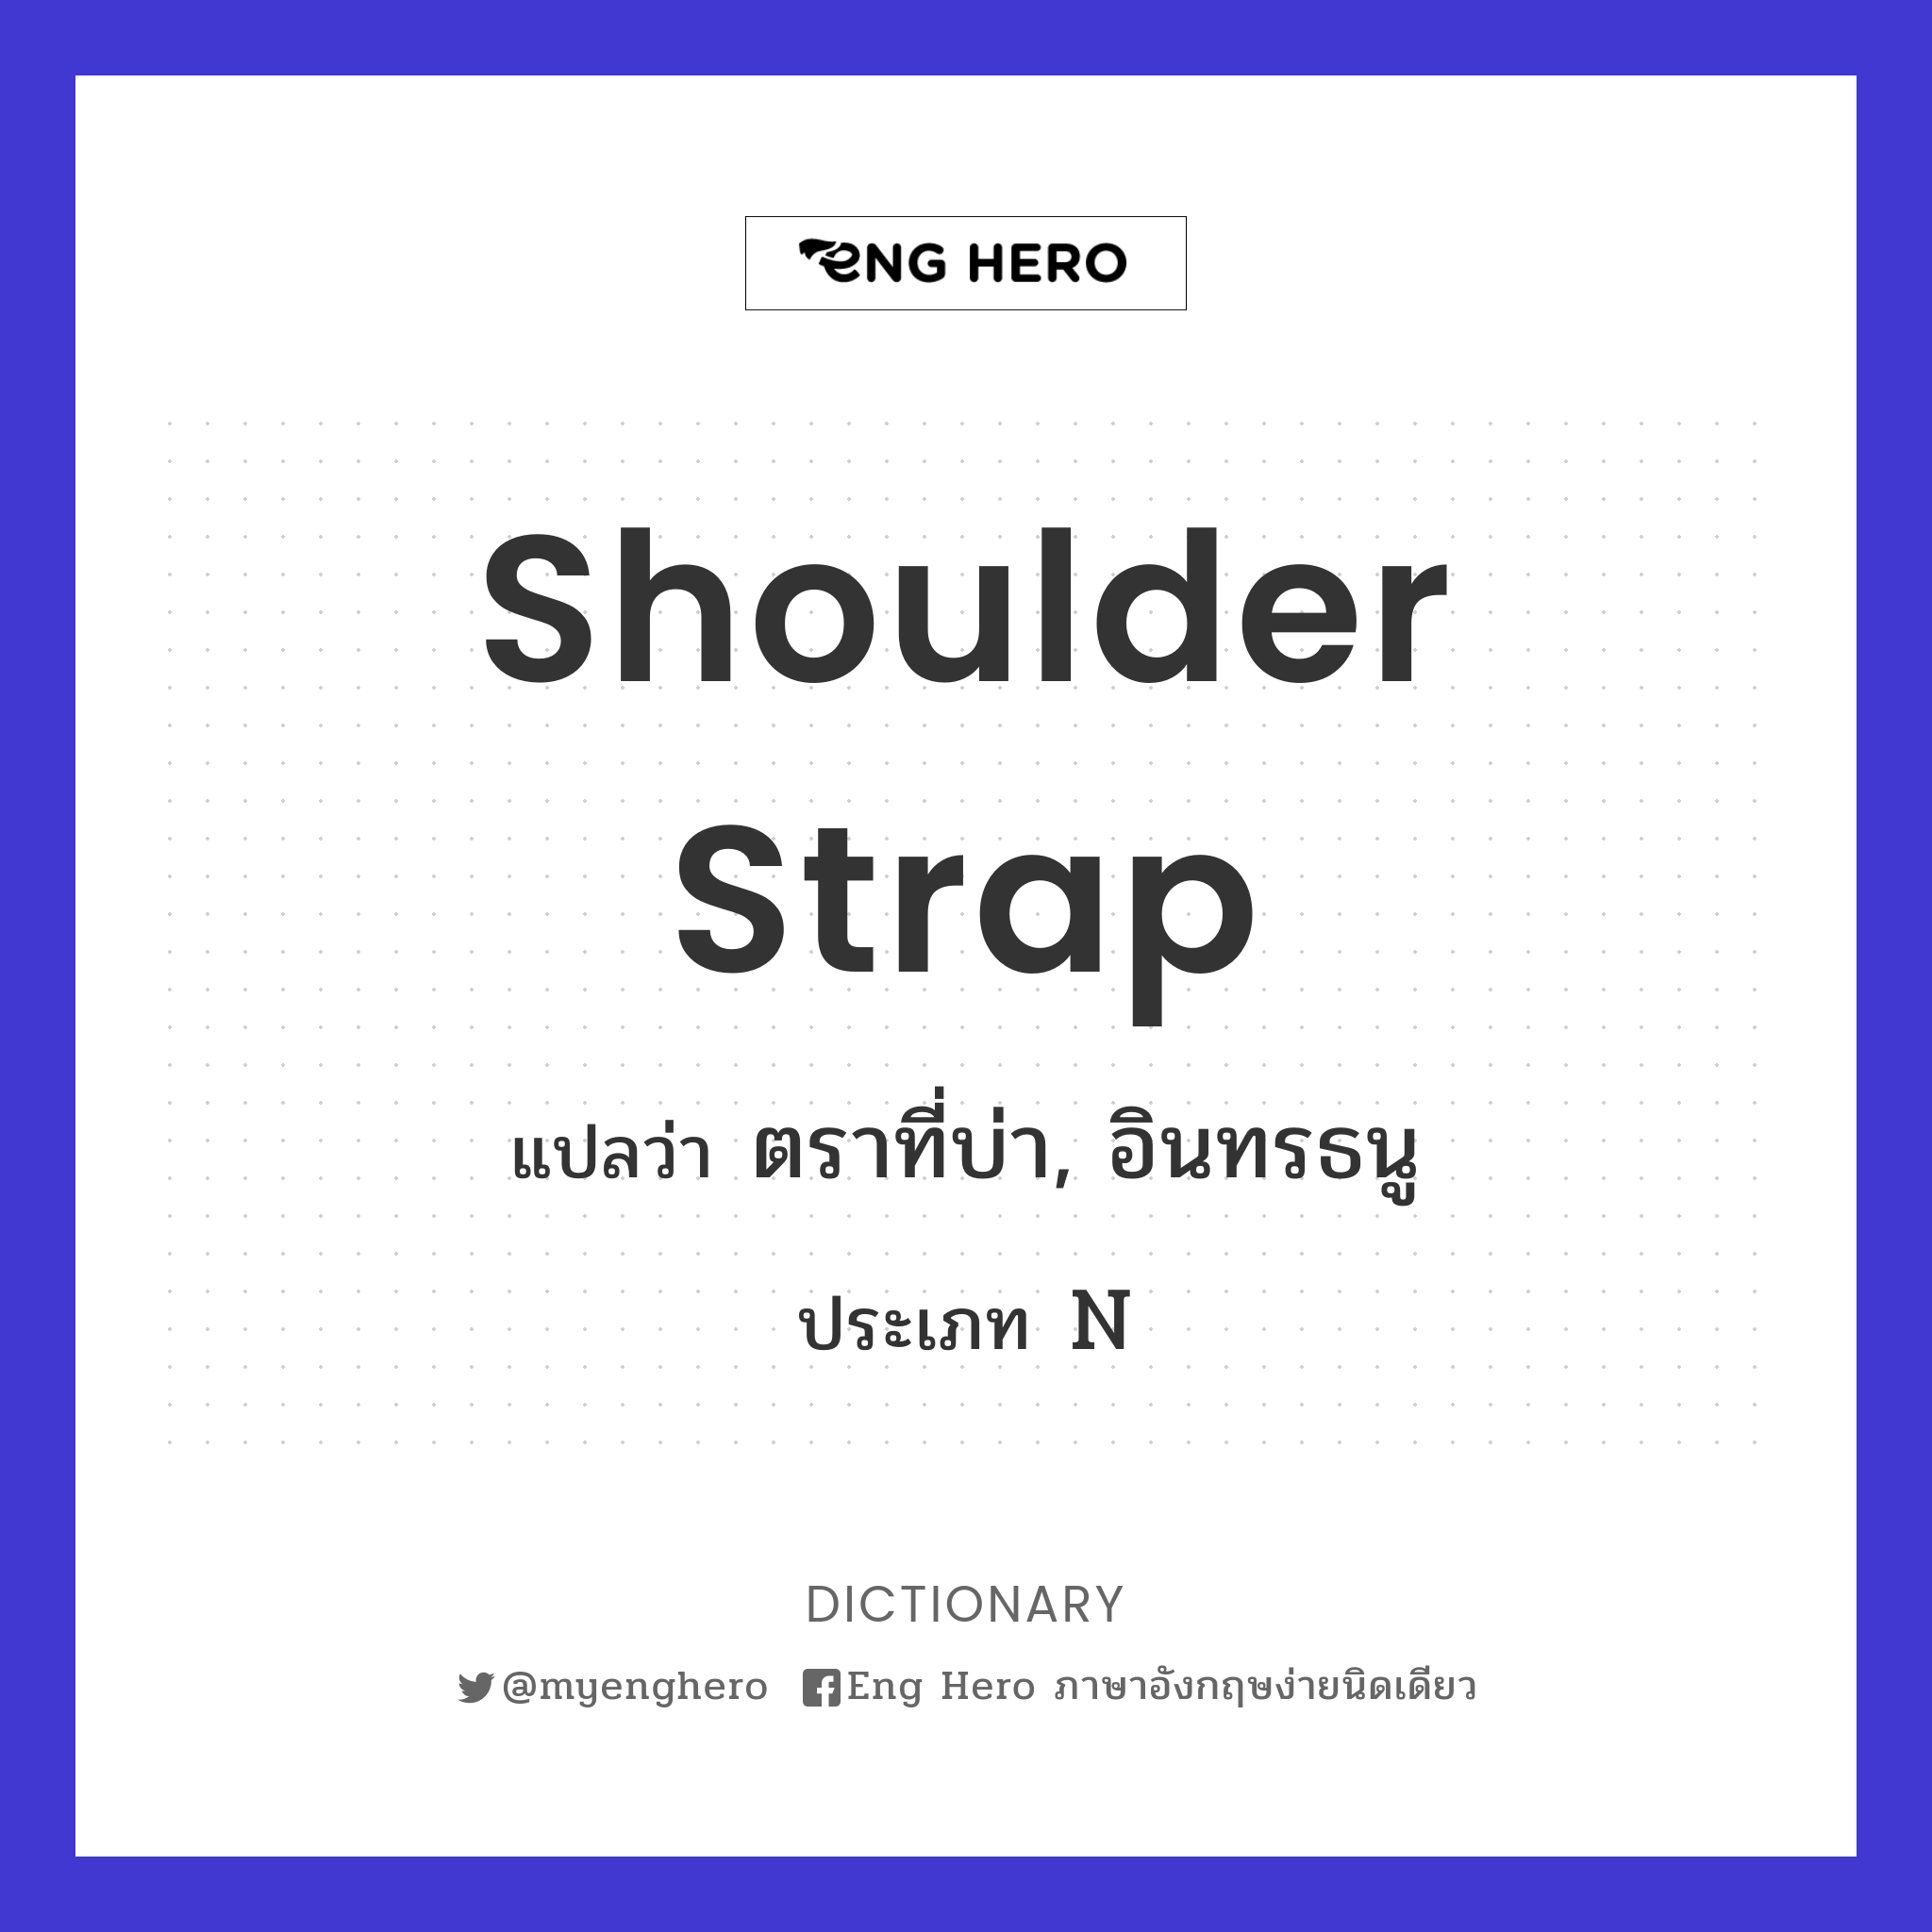 shoulder strap